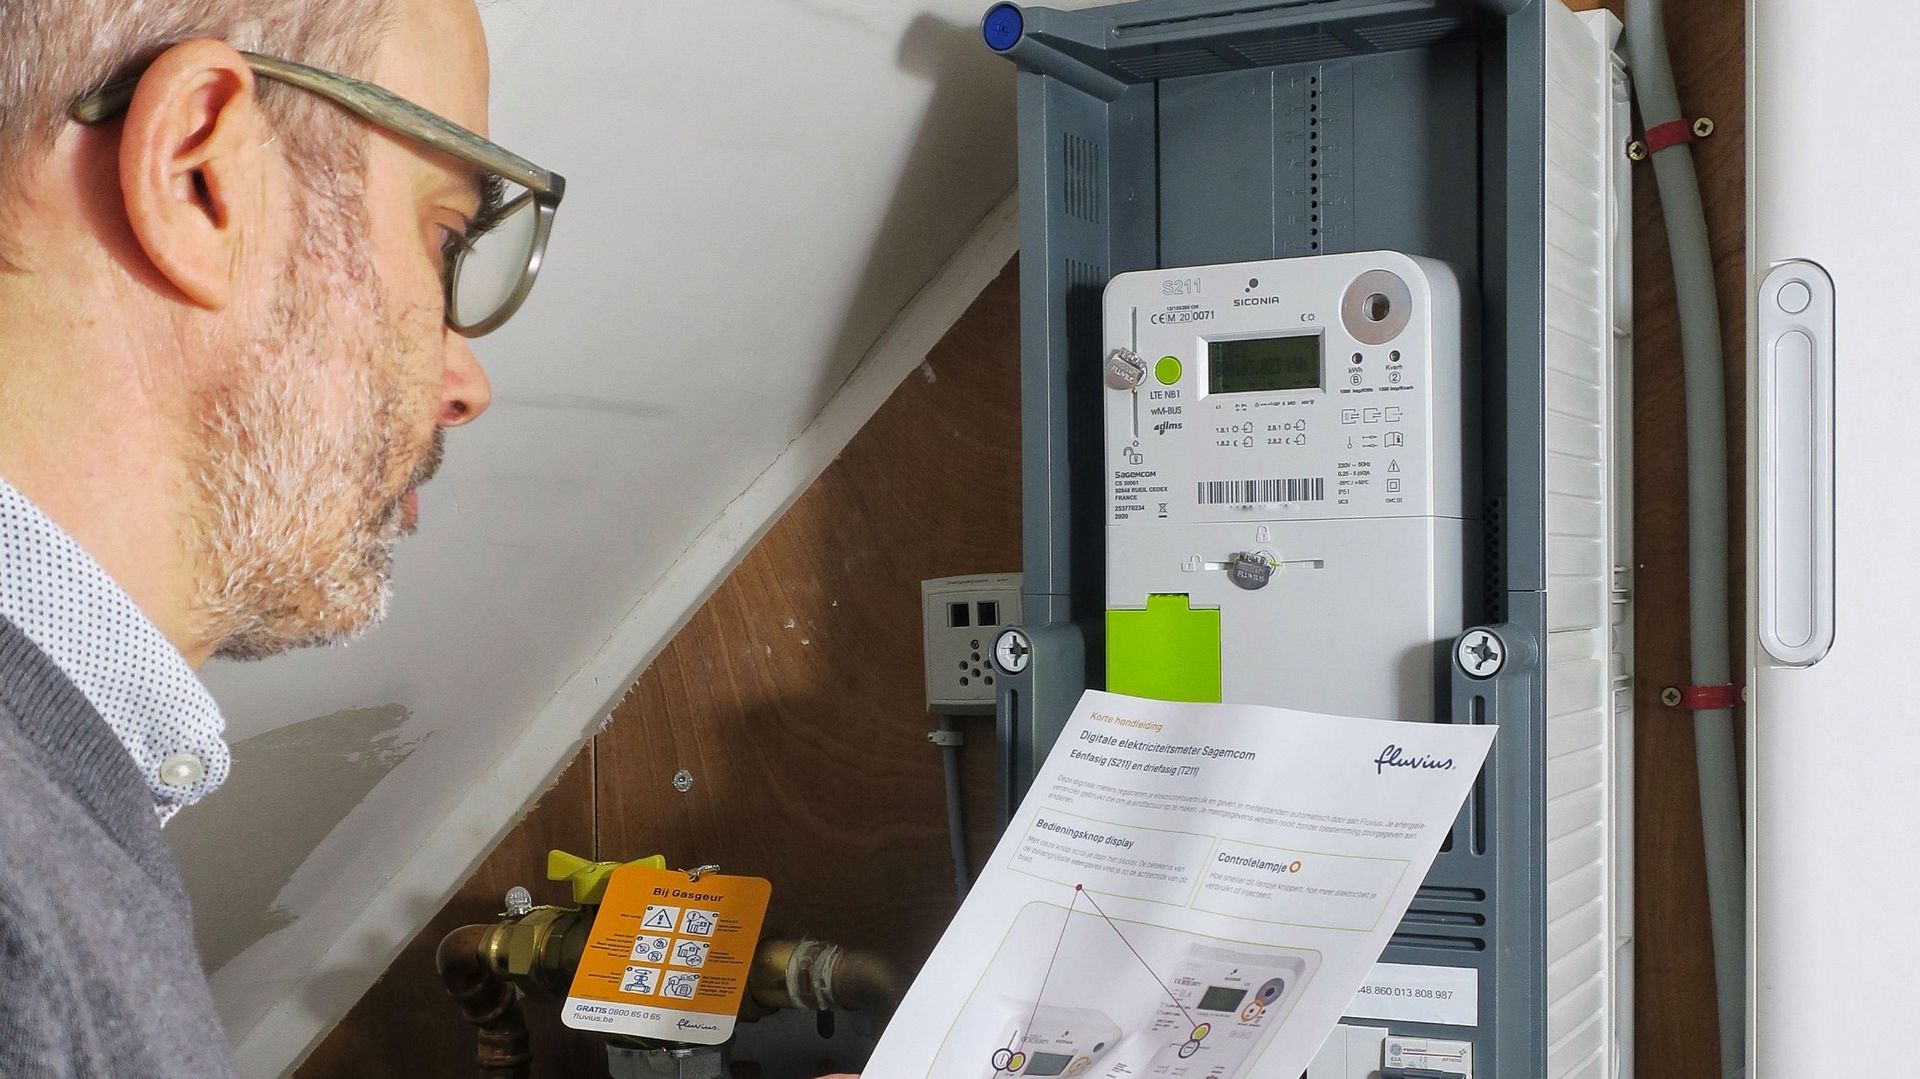 Une photo d'illustration montre un homme inspectant son compteur électrique intelligent Sagemcom à Gand, le jeudi 14 janvier 2021.
